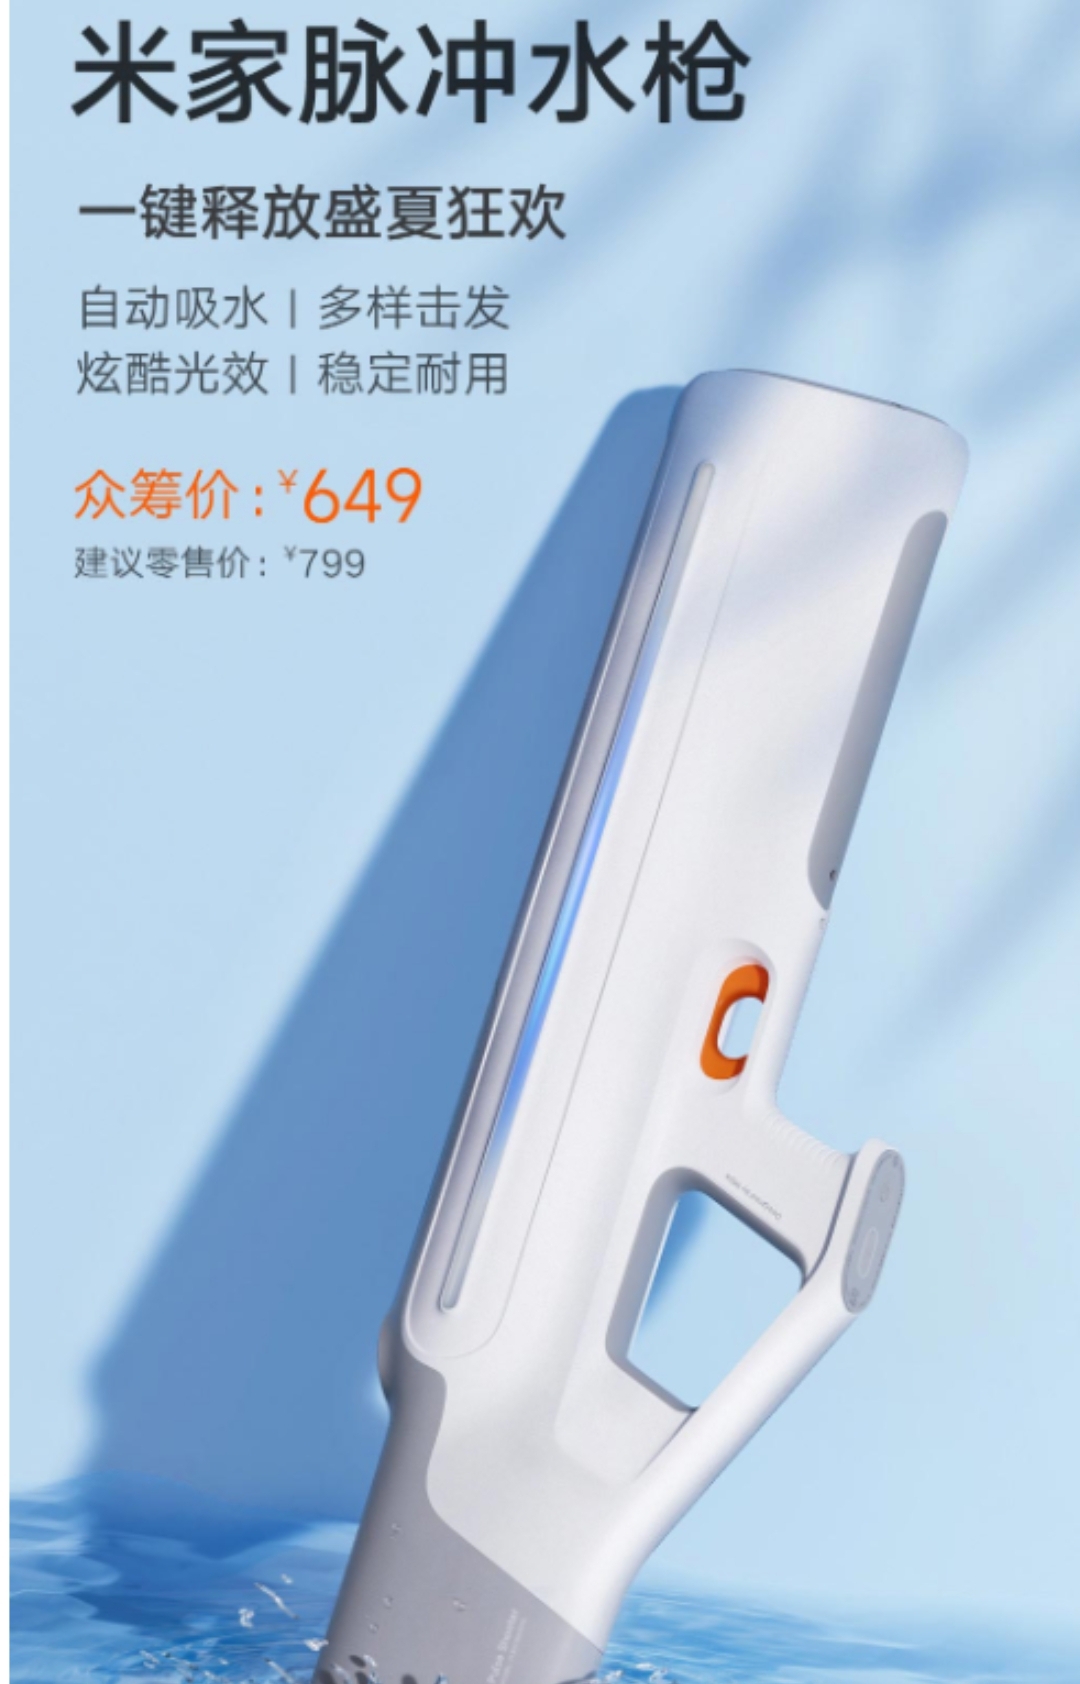 Xiaomi gun 2c